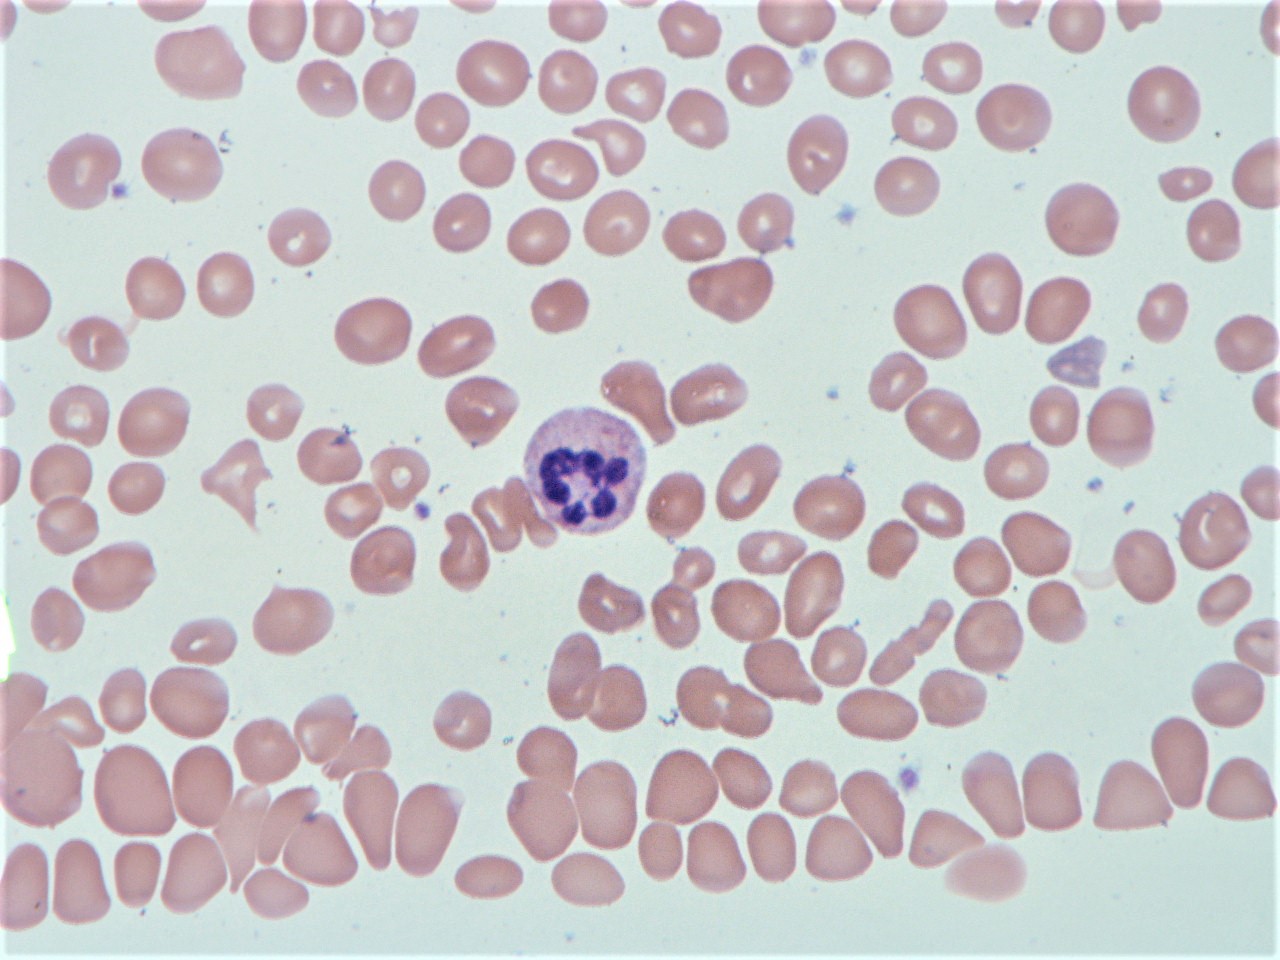 megaloblastic anemia peripheral smear